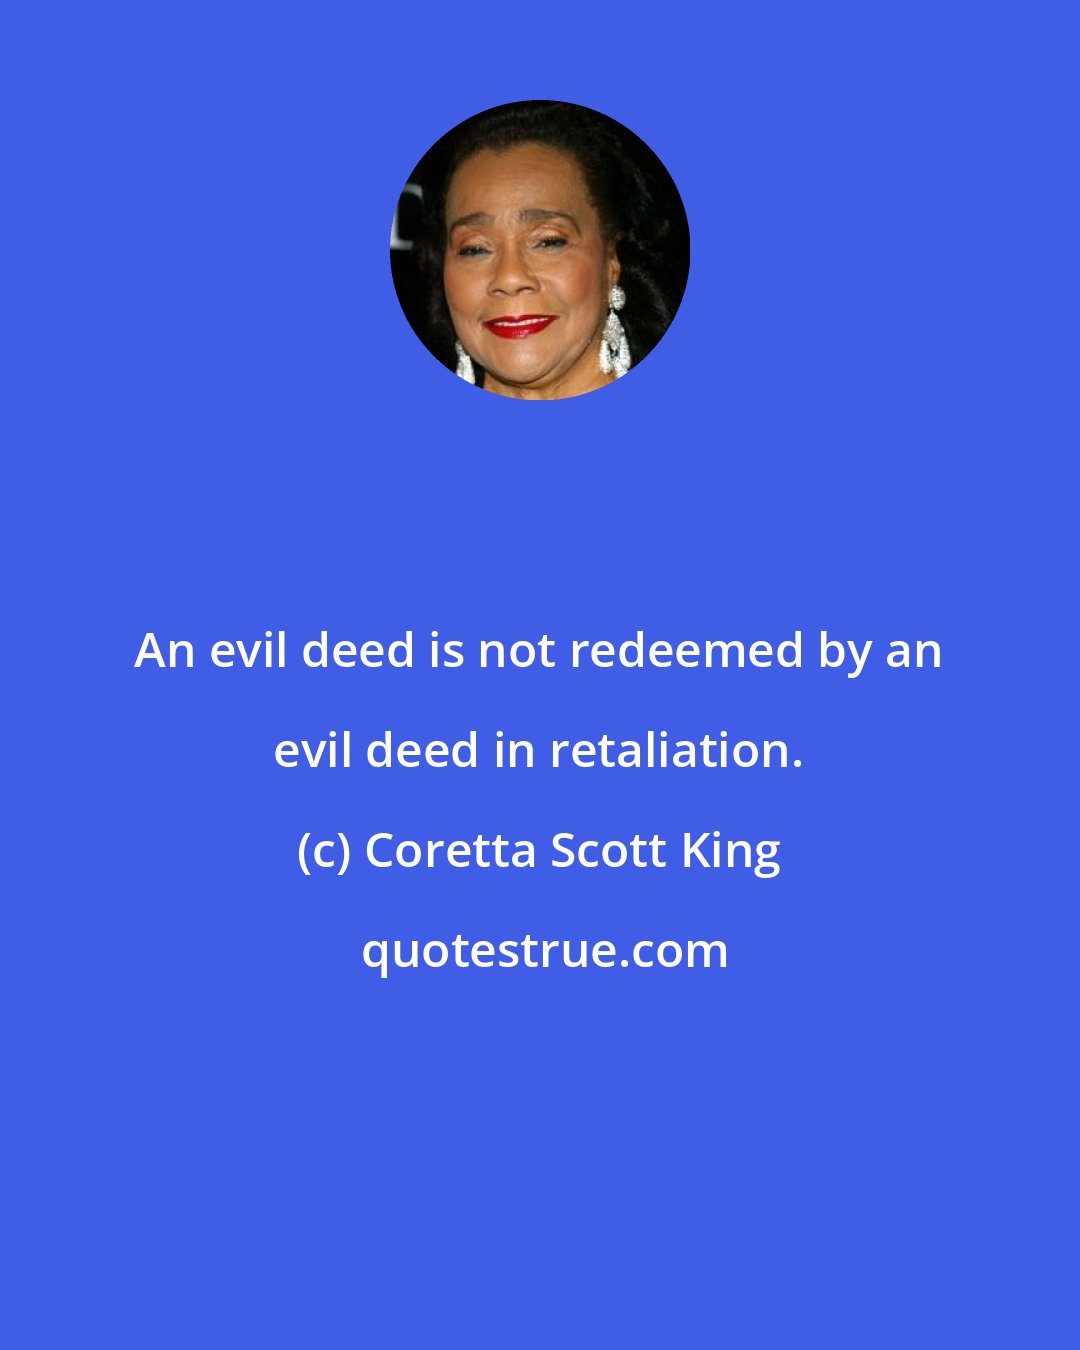 Coretta Scott King: An evil deed is not redeemed by an evil deed in retaliation.